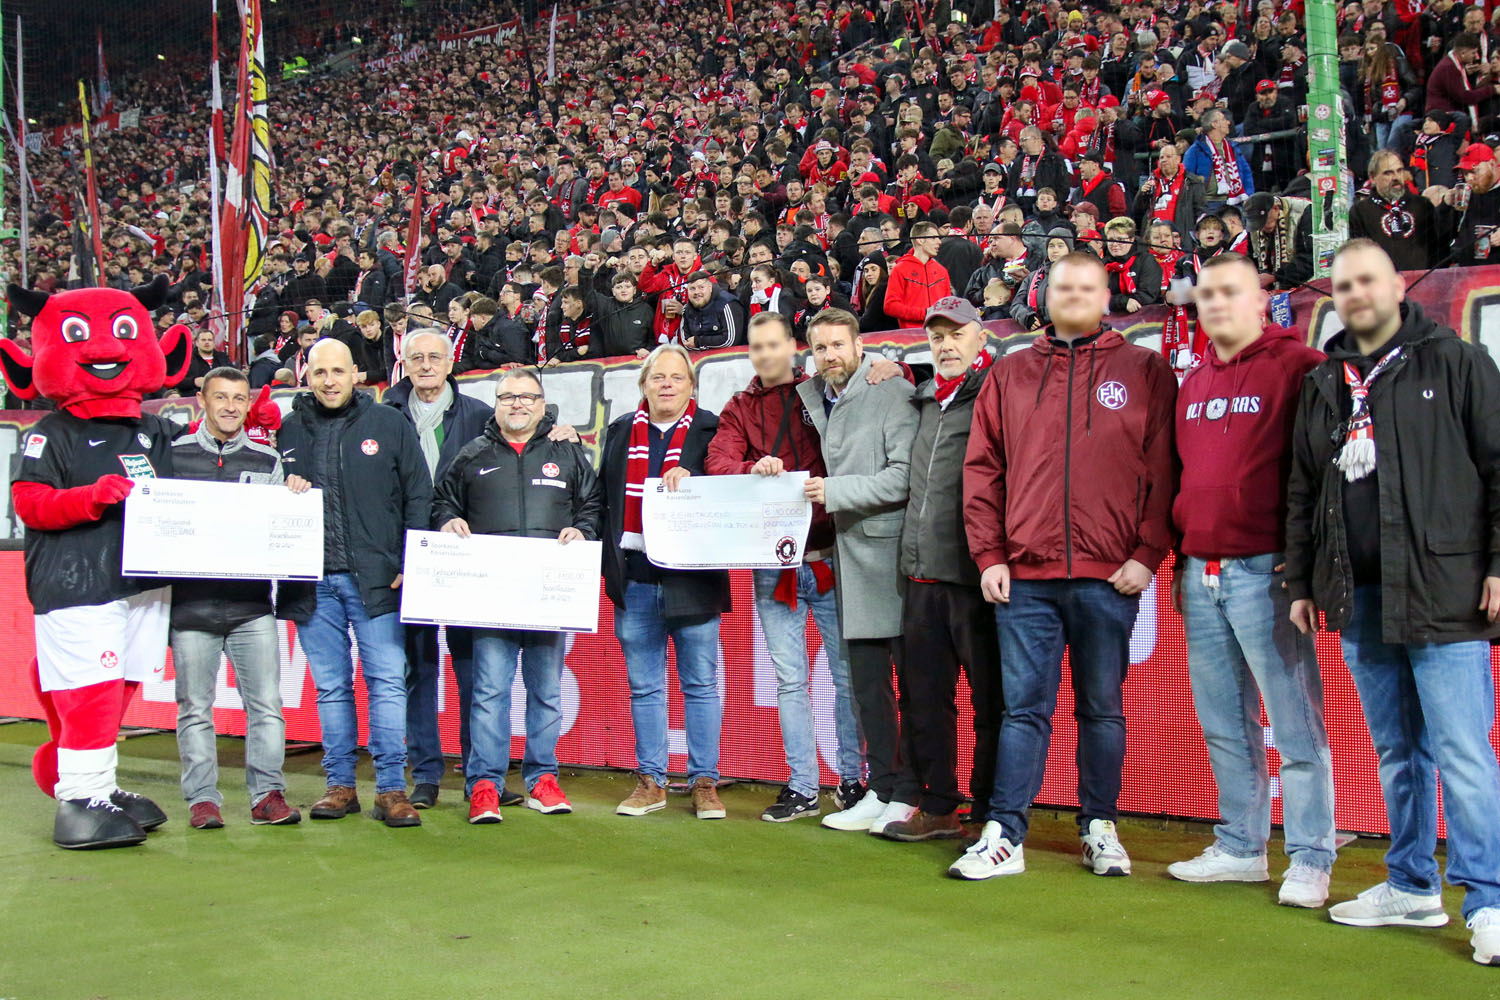 Übergabe mehrere Spendenschecks durch FCK-Fans vor dem Spiel